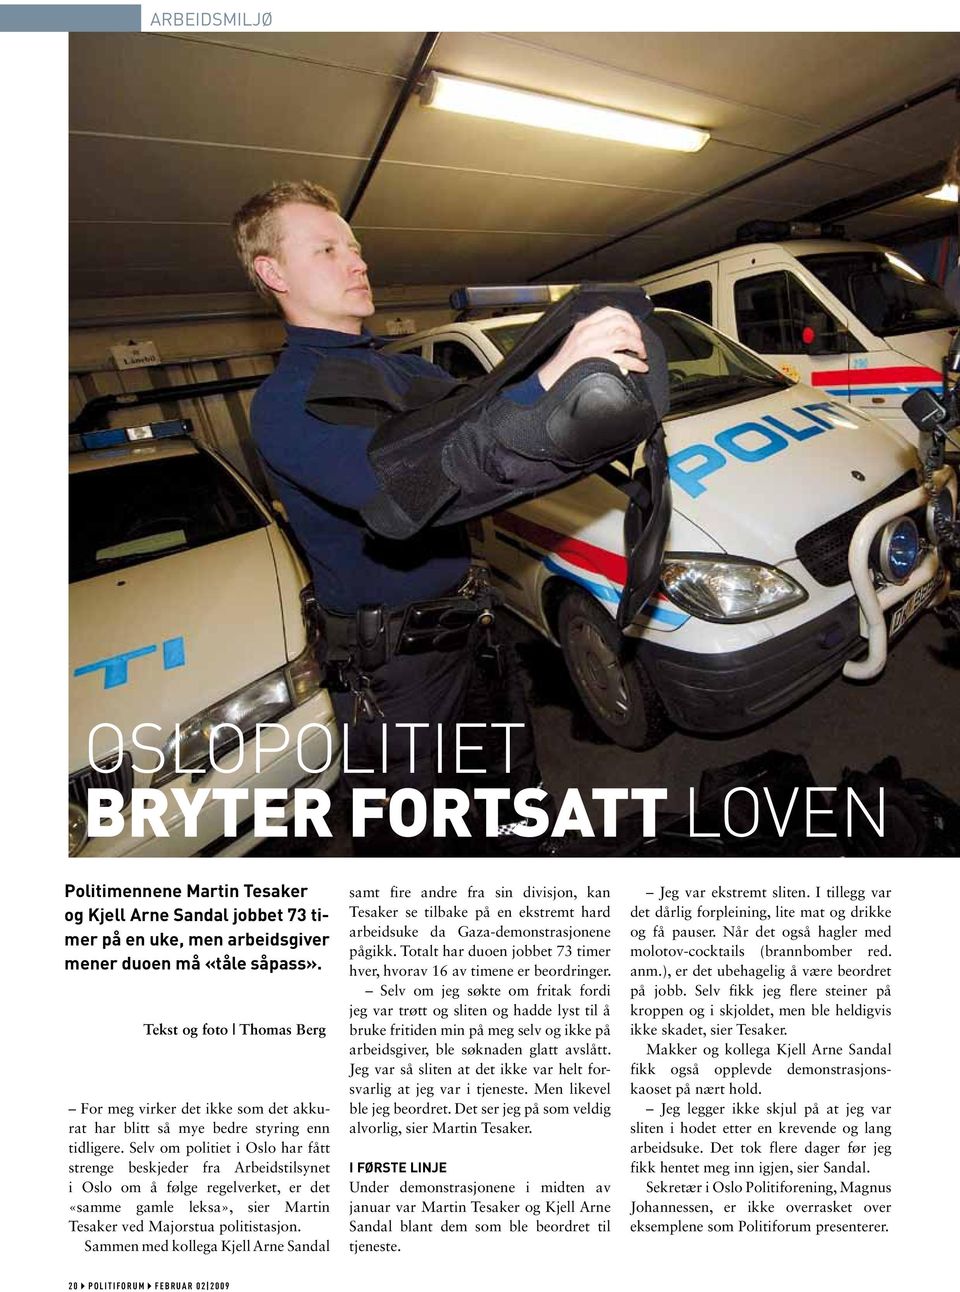 Selv om politiet i Oslo har fått strenge beskjeder fra Arbeidstilsynet i Oslo om å følge regelverket, er det «samme gamle leksa», sier Martin Tesaker ved Majorstua politistasjon.